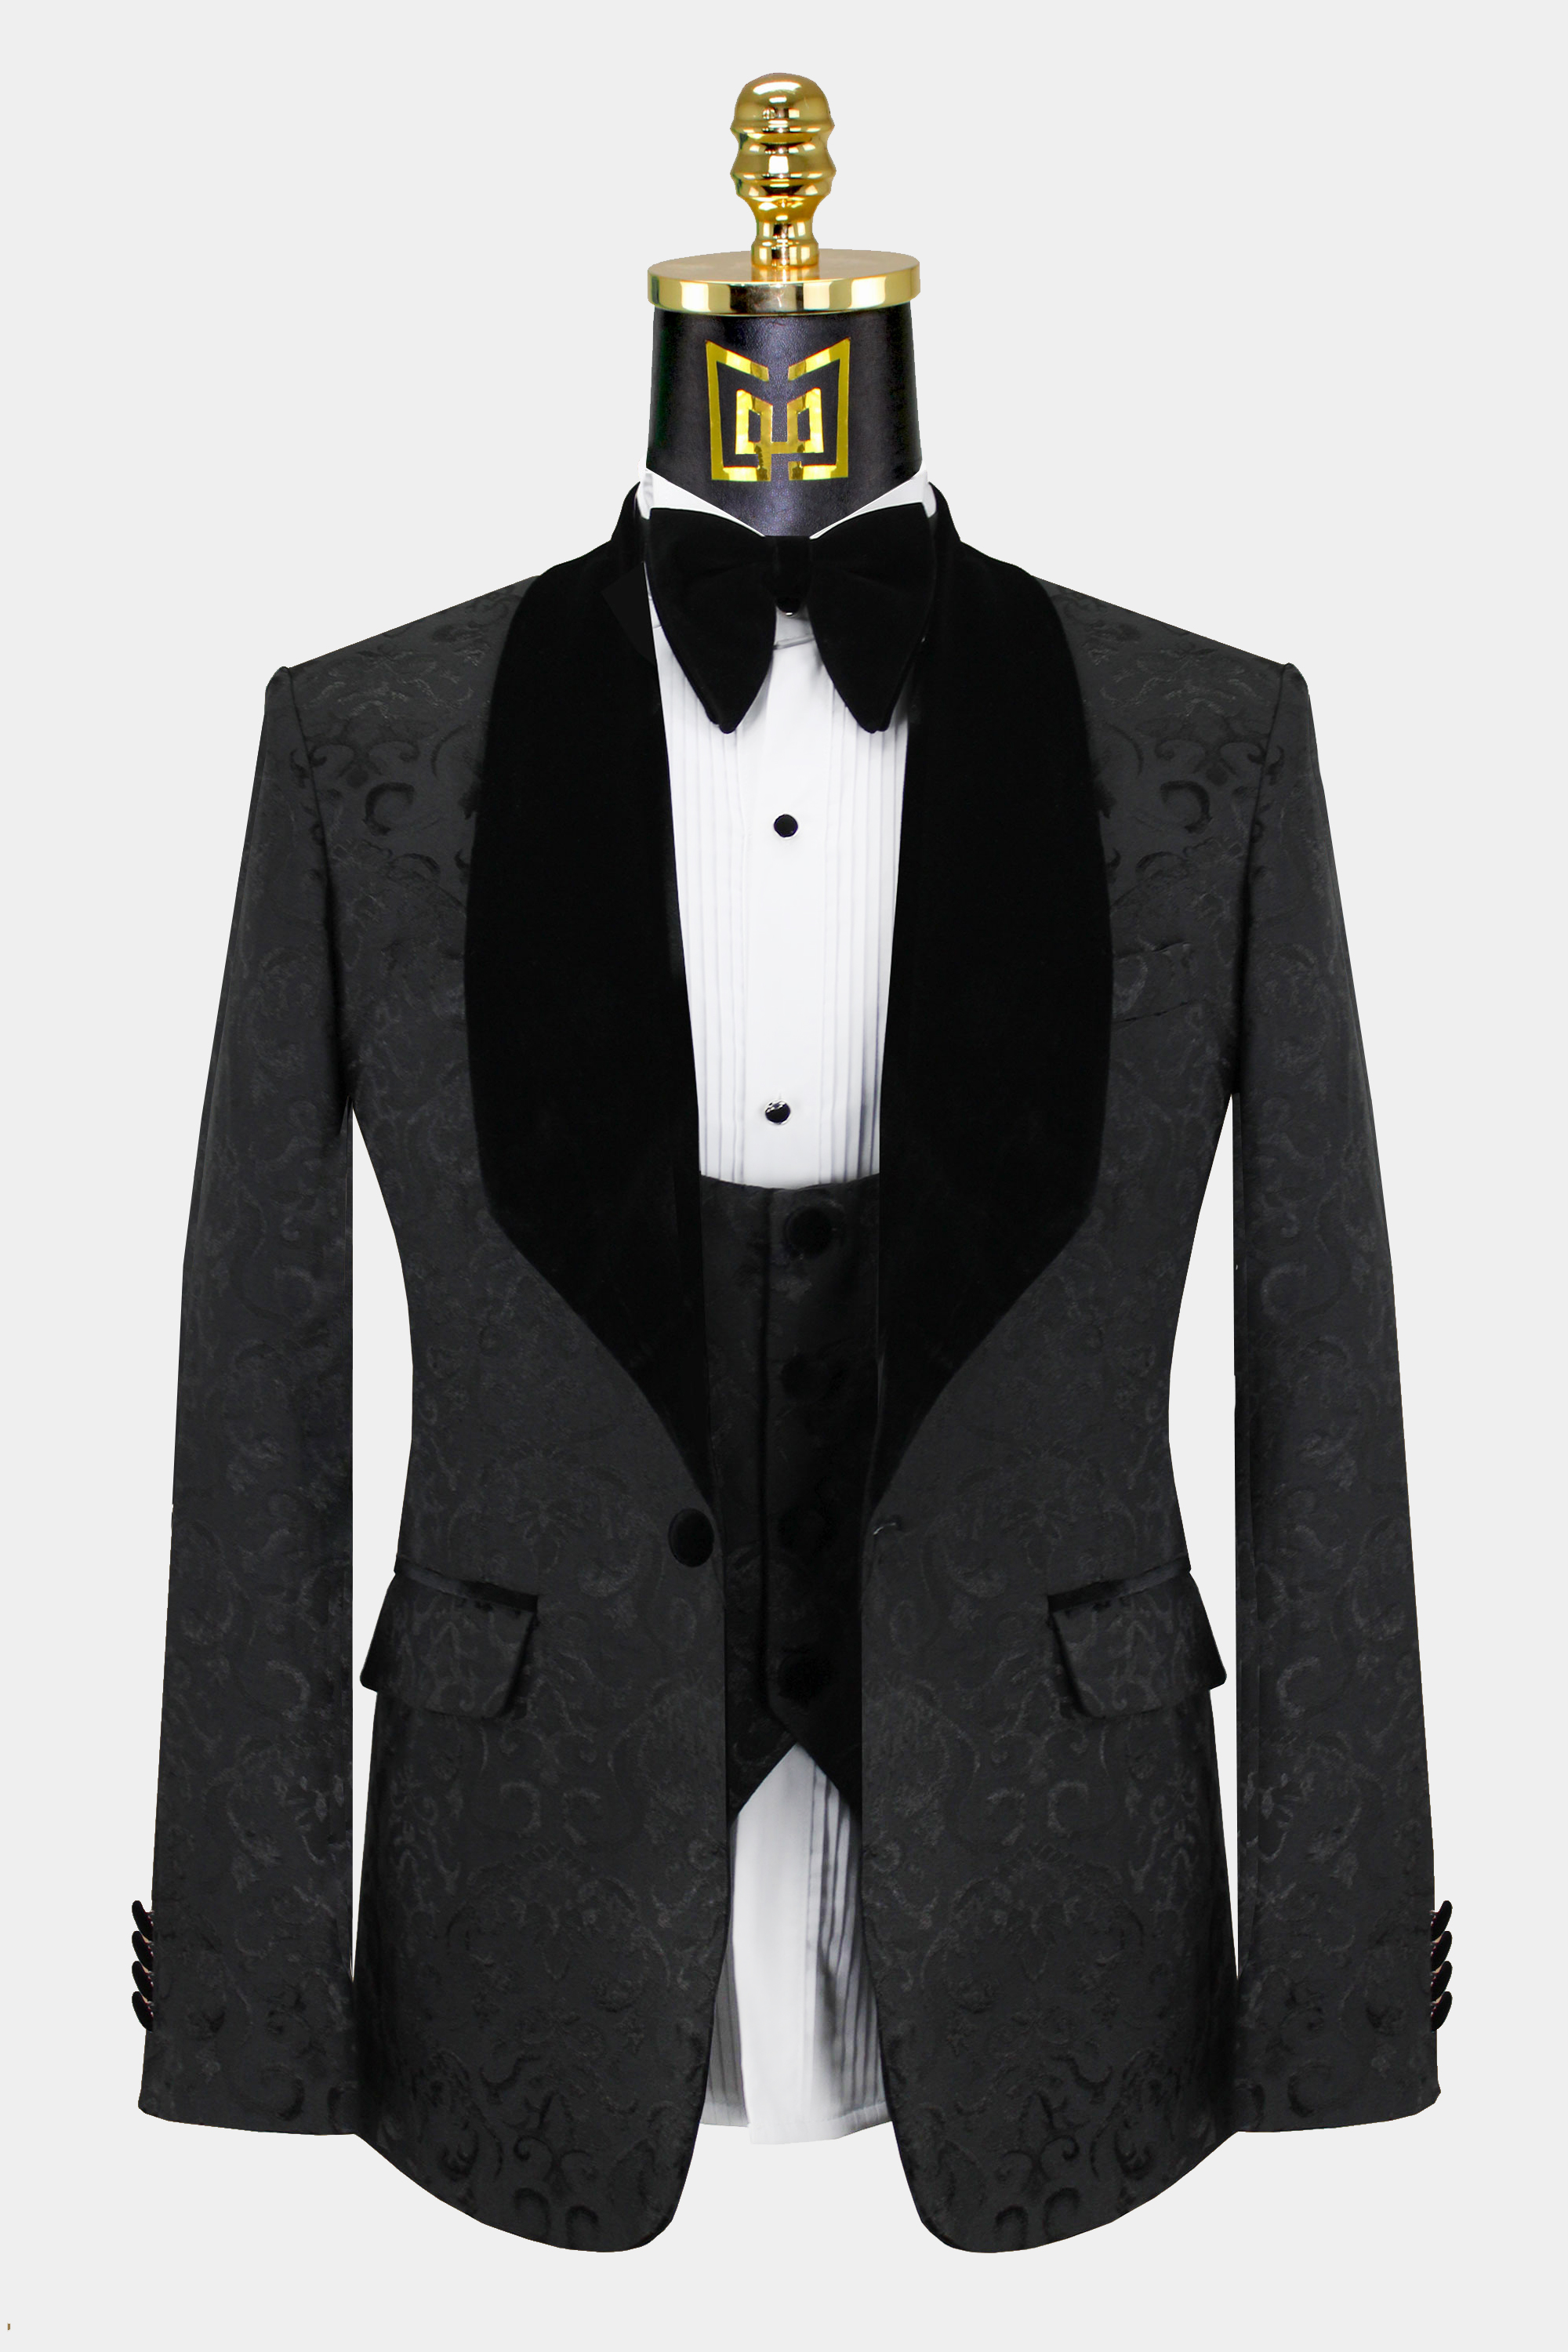 Black-Damask-Tuxedo-Wedding-Prom-Suit-Groom-Jacket-from-Gentlemansguru.com_